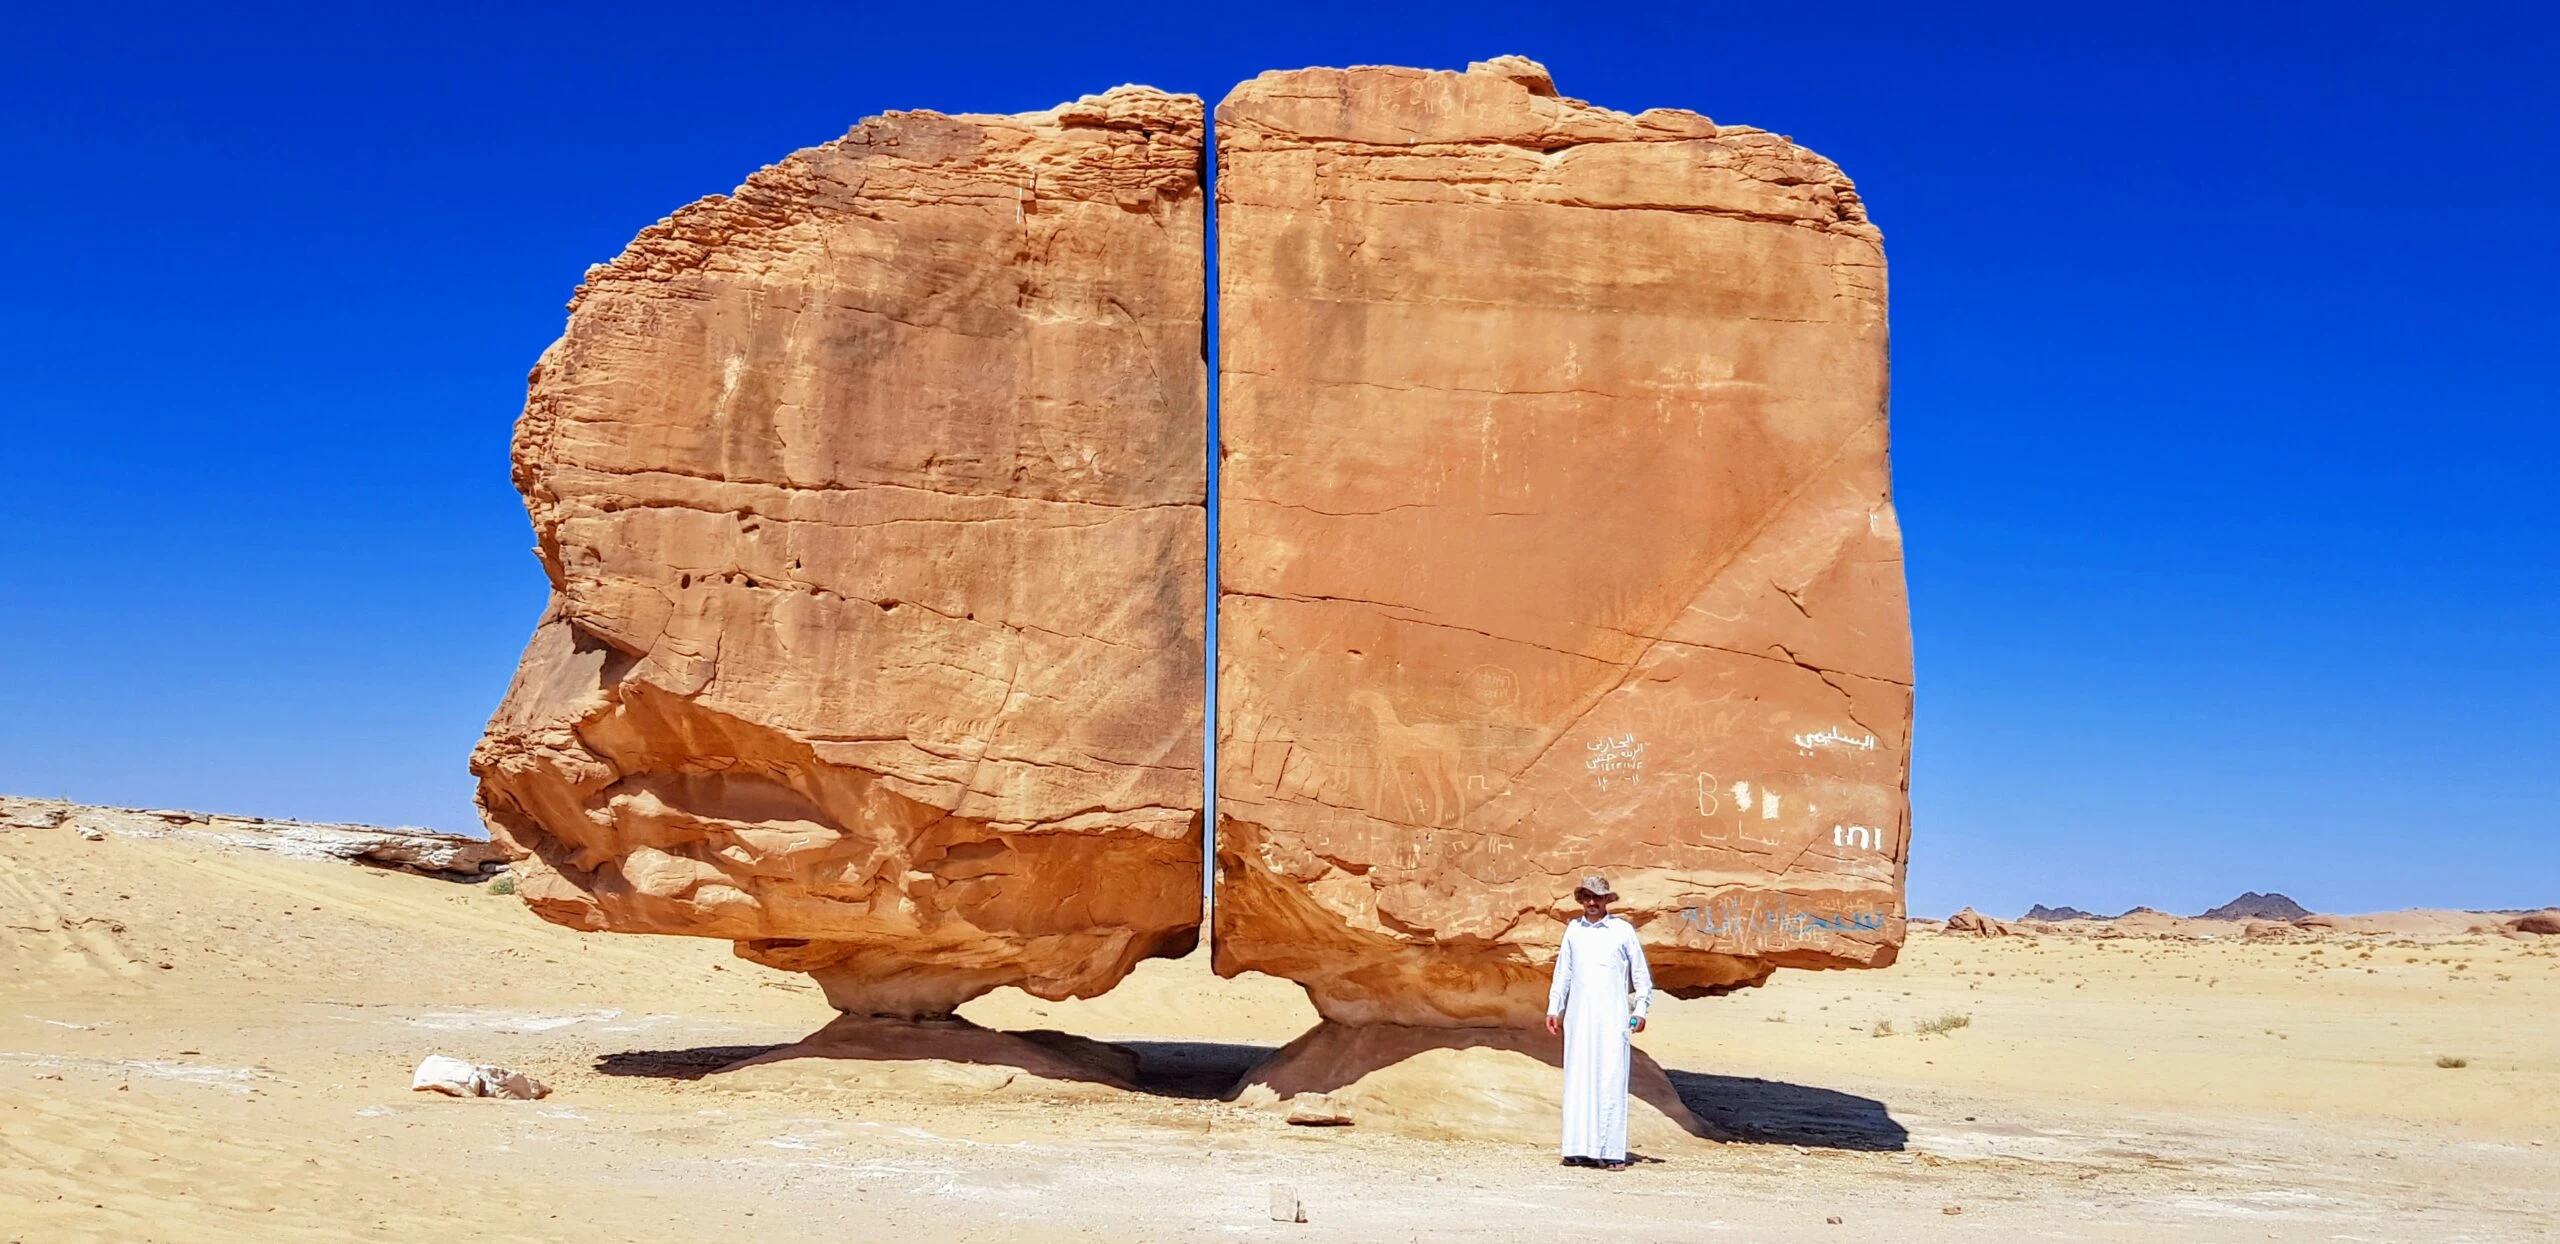 The Unique Al Naslaa Rock Formation of Saudi Arabi